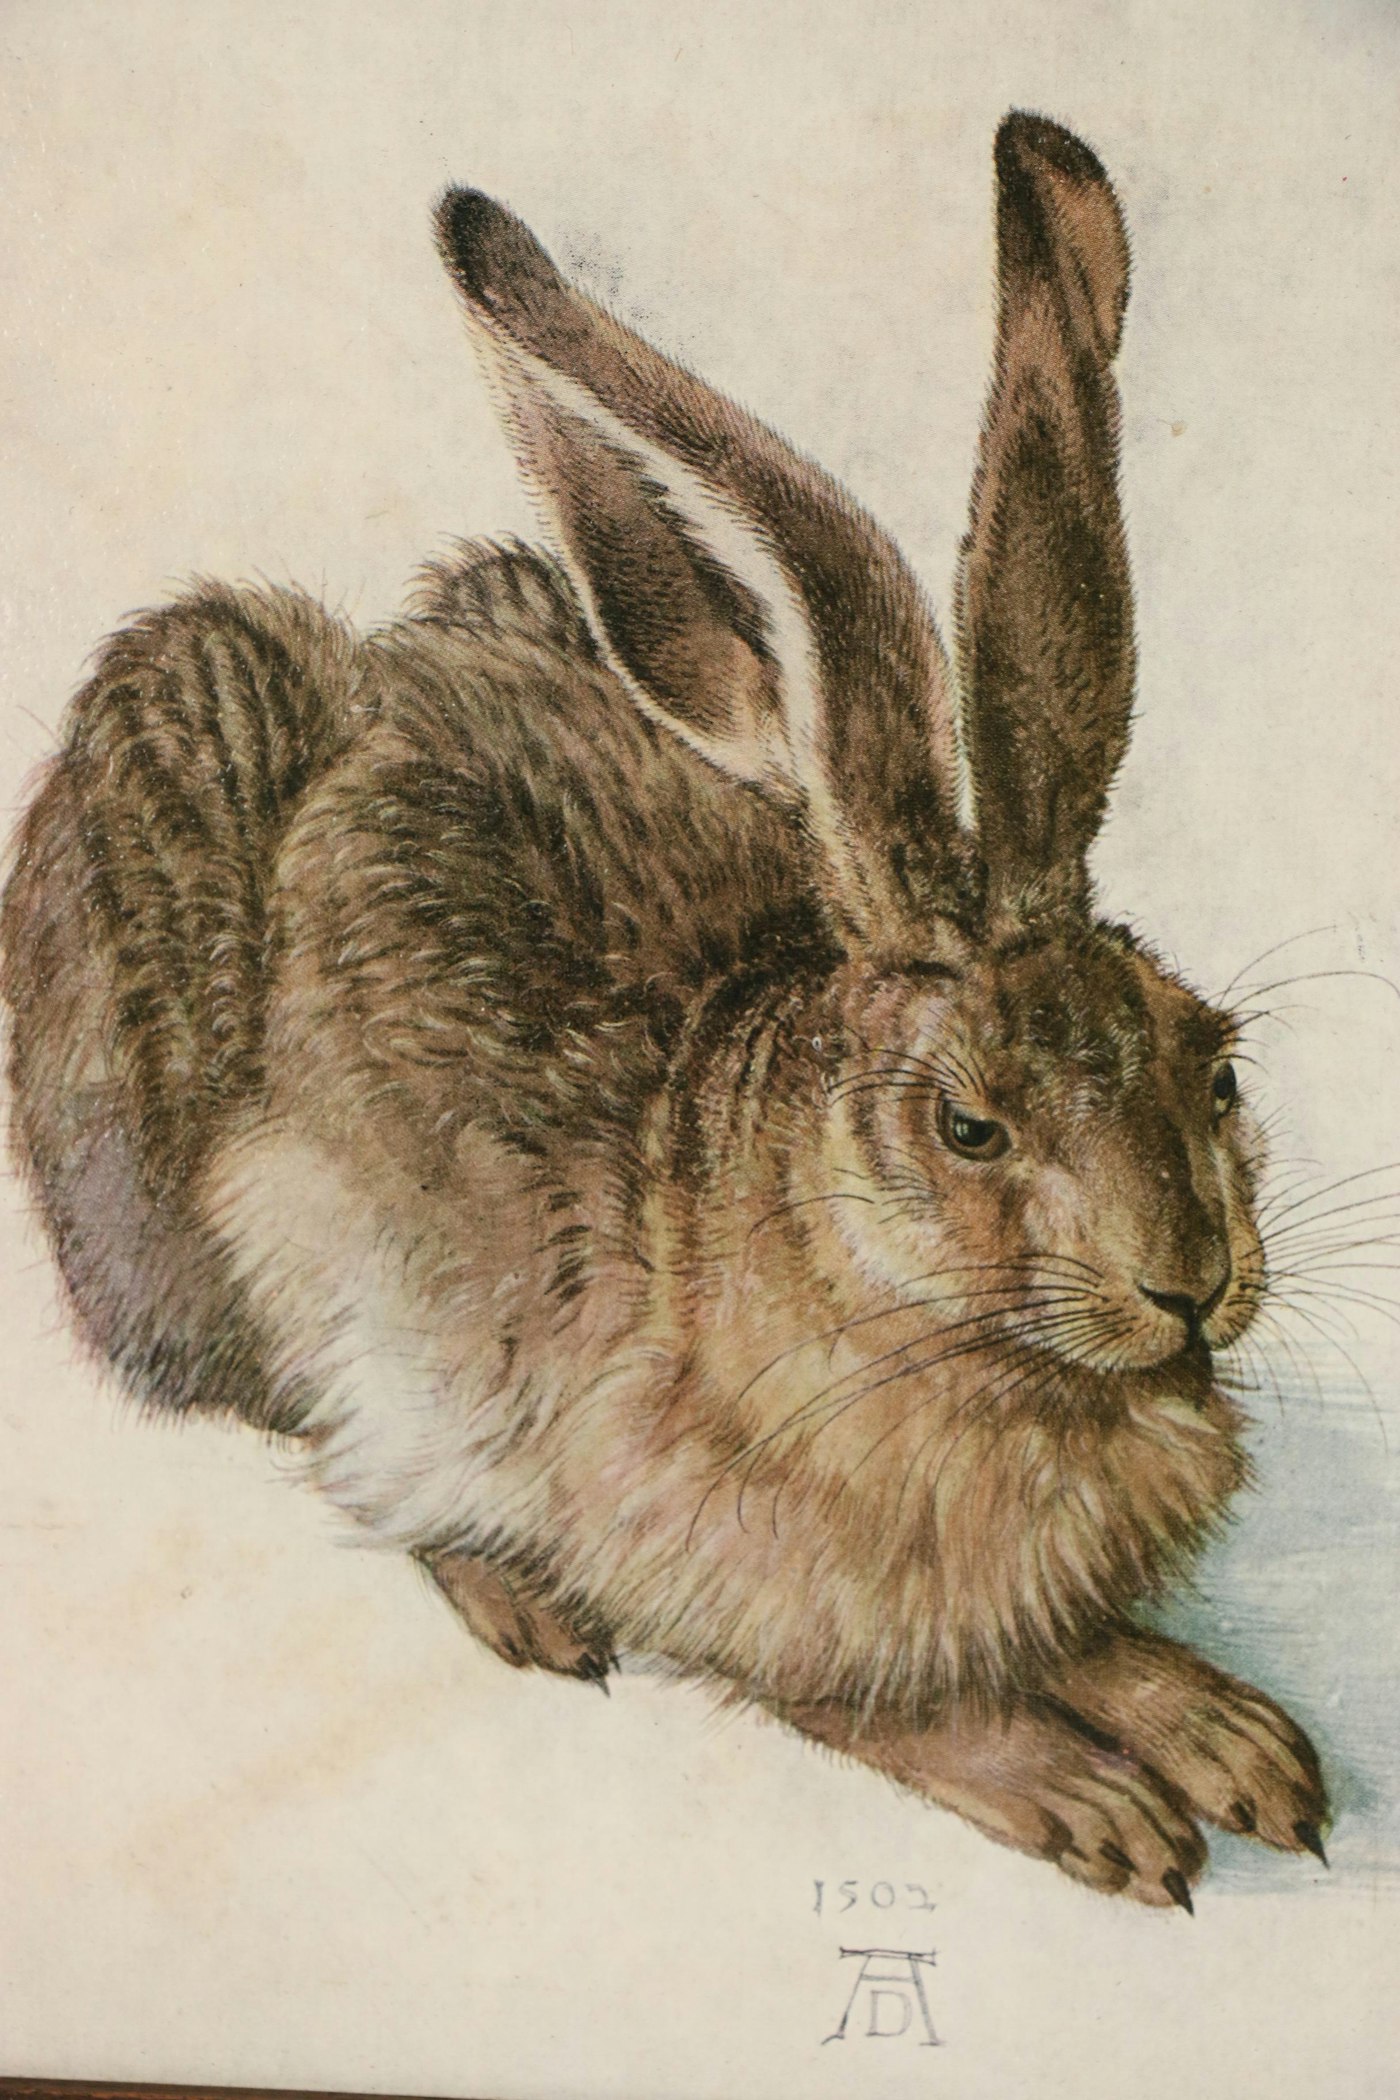 Offset Lithograph after Albrecht Dürer "Young Hare" EBTH